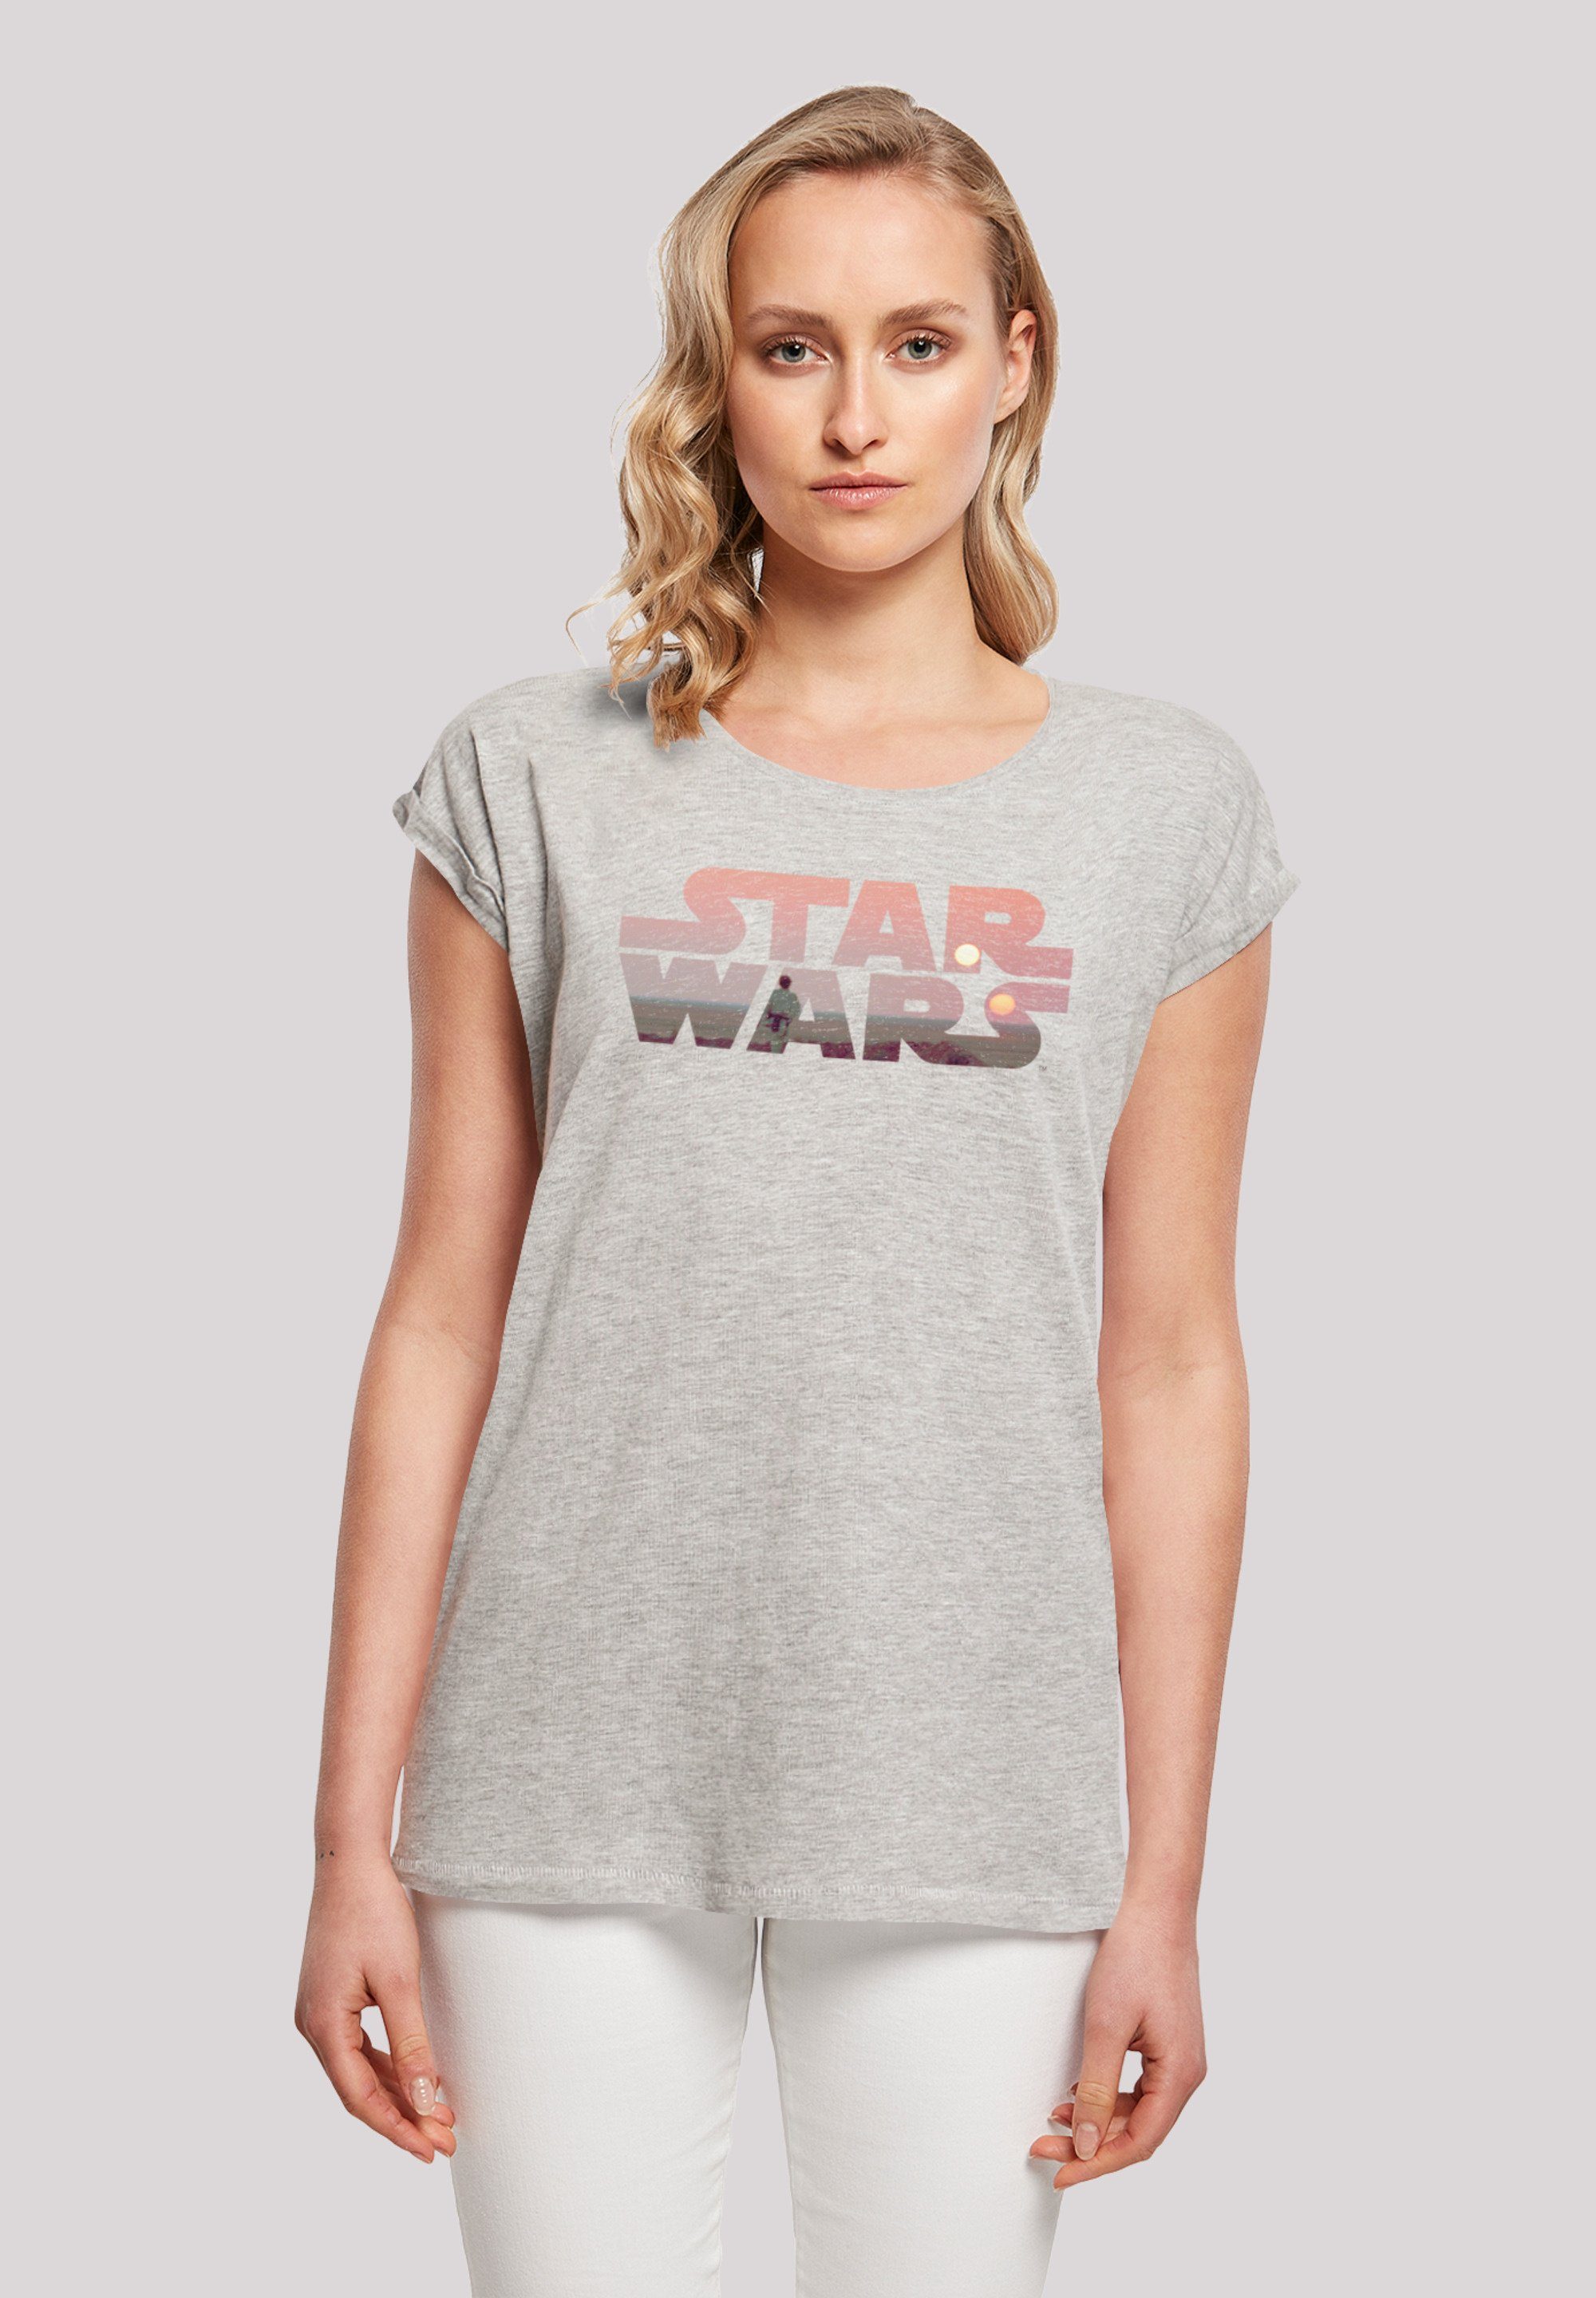 F4NT4STIC T-Shirt Wars Offiziell lizenziertes Star Print, Tatooine Wars Logo T-Shirt Star